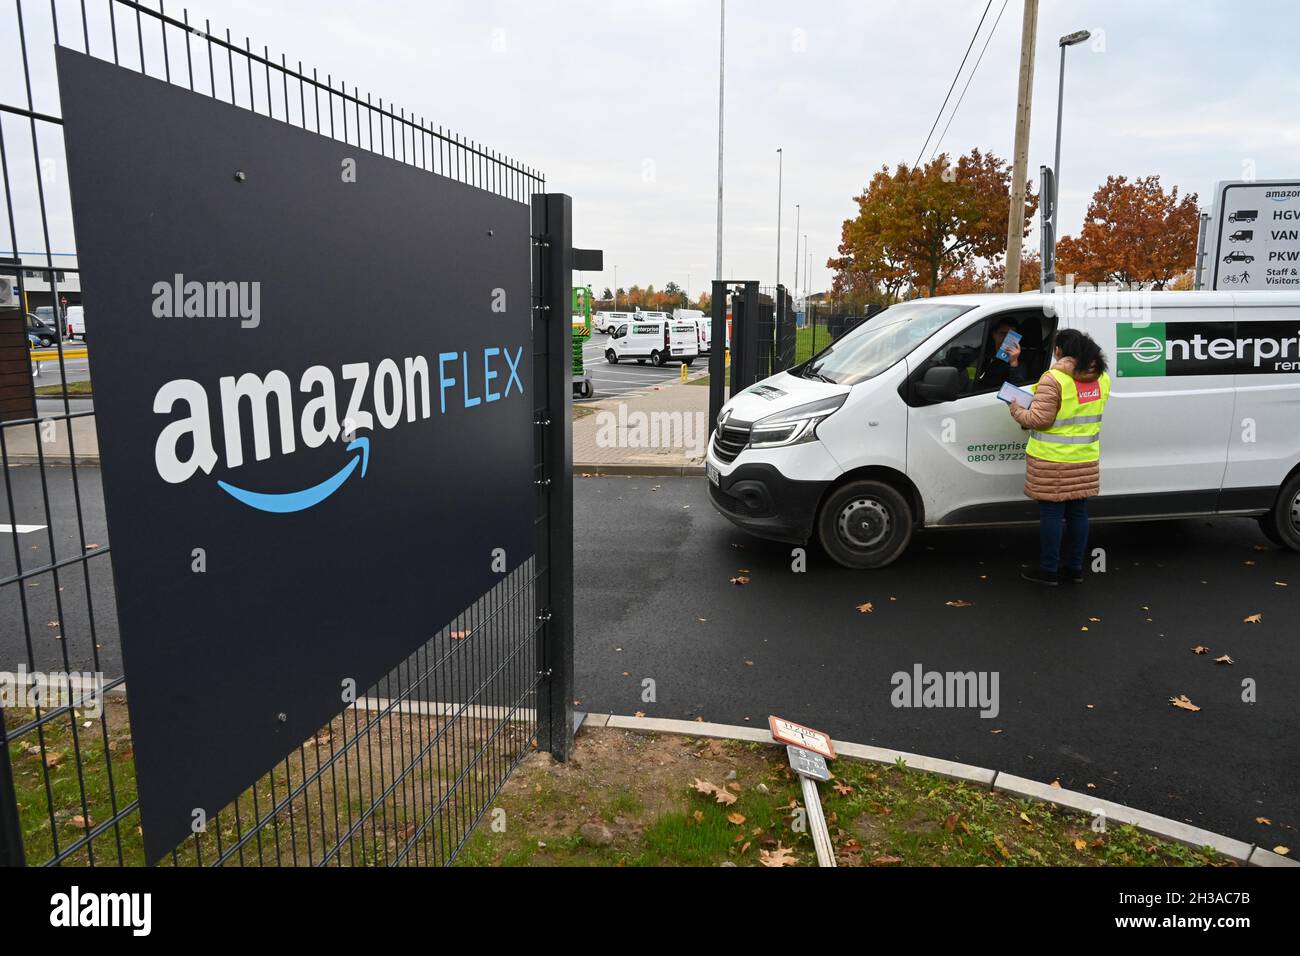 27 de octubre de 2021, Mecklemburgo-Pomerania Occidental, Neubrandenburg:  En el nuevo centro de distribución del minorista en línea Amazon cuelga un  signo de la empresa Amazon Flex. Amazon Flex es un subcontratista